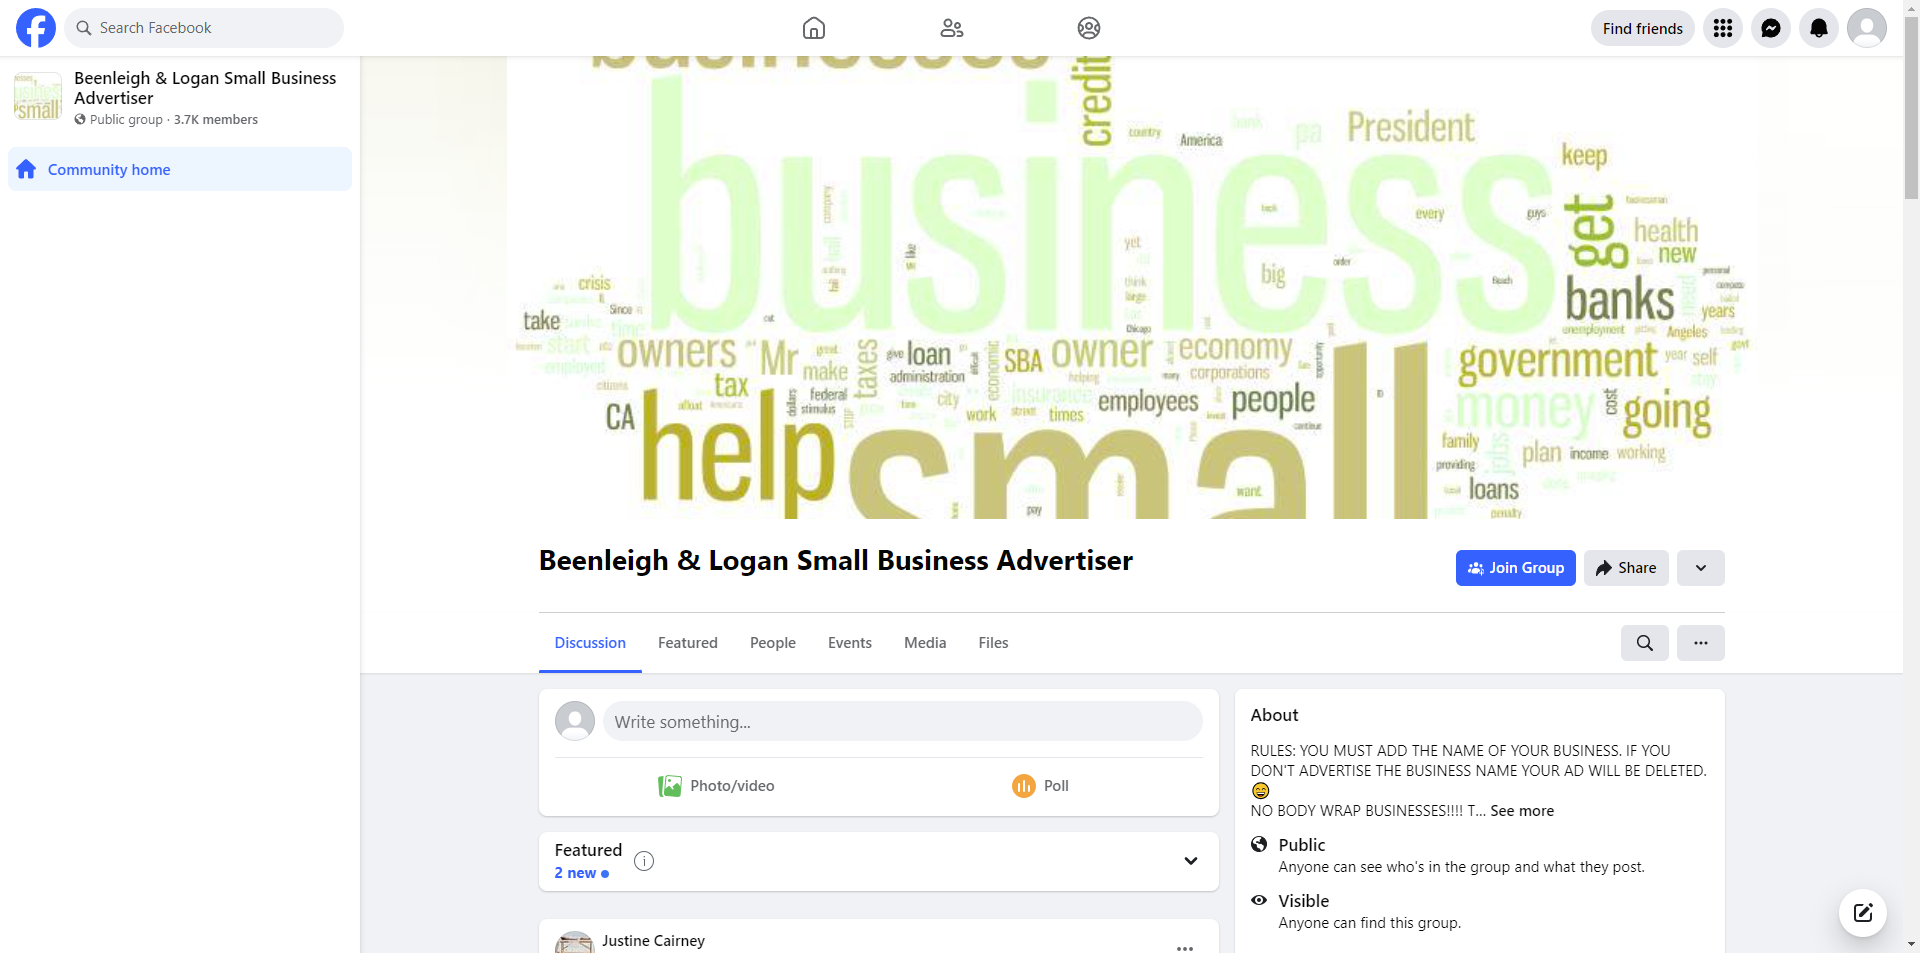 Beenleigh & Logan Small Business Advertiser